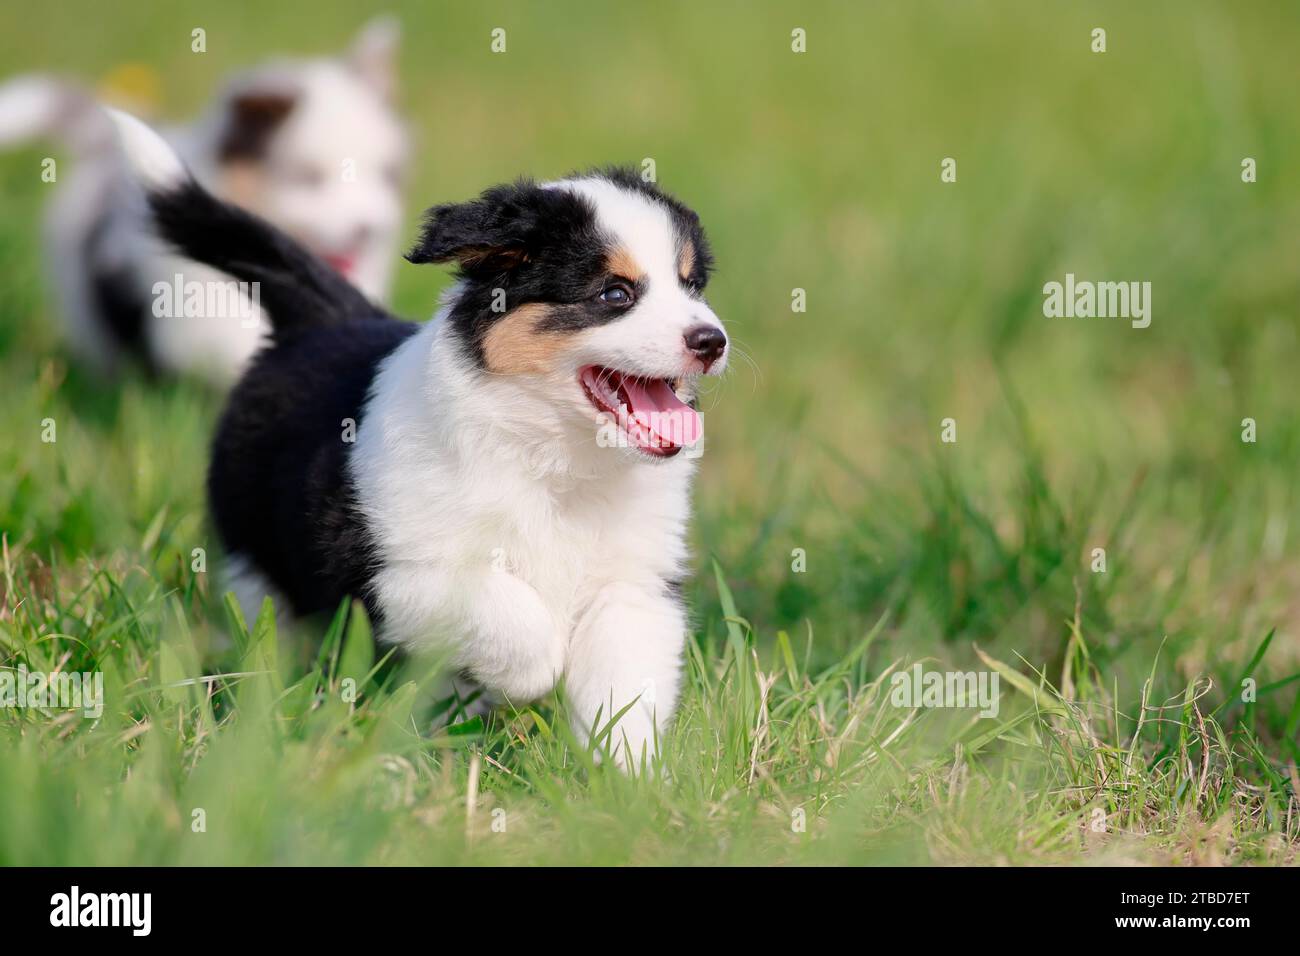 Cachorro de pastor americano en miniatura (Canis lupus familiaris), cachorro que corre a través de un prado, Renania-Palatinado, Alemania Foto de stock